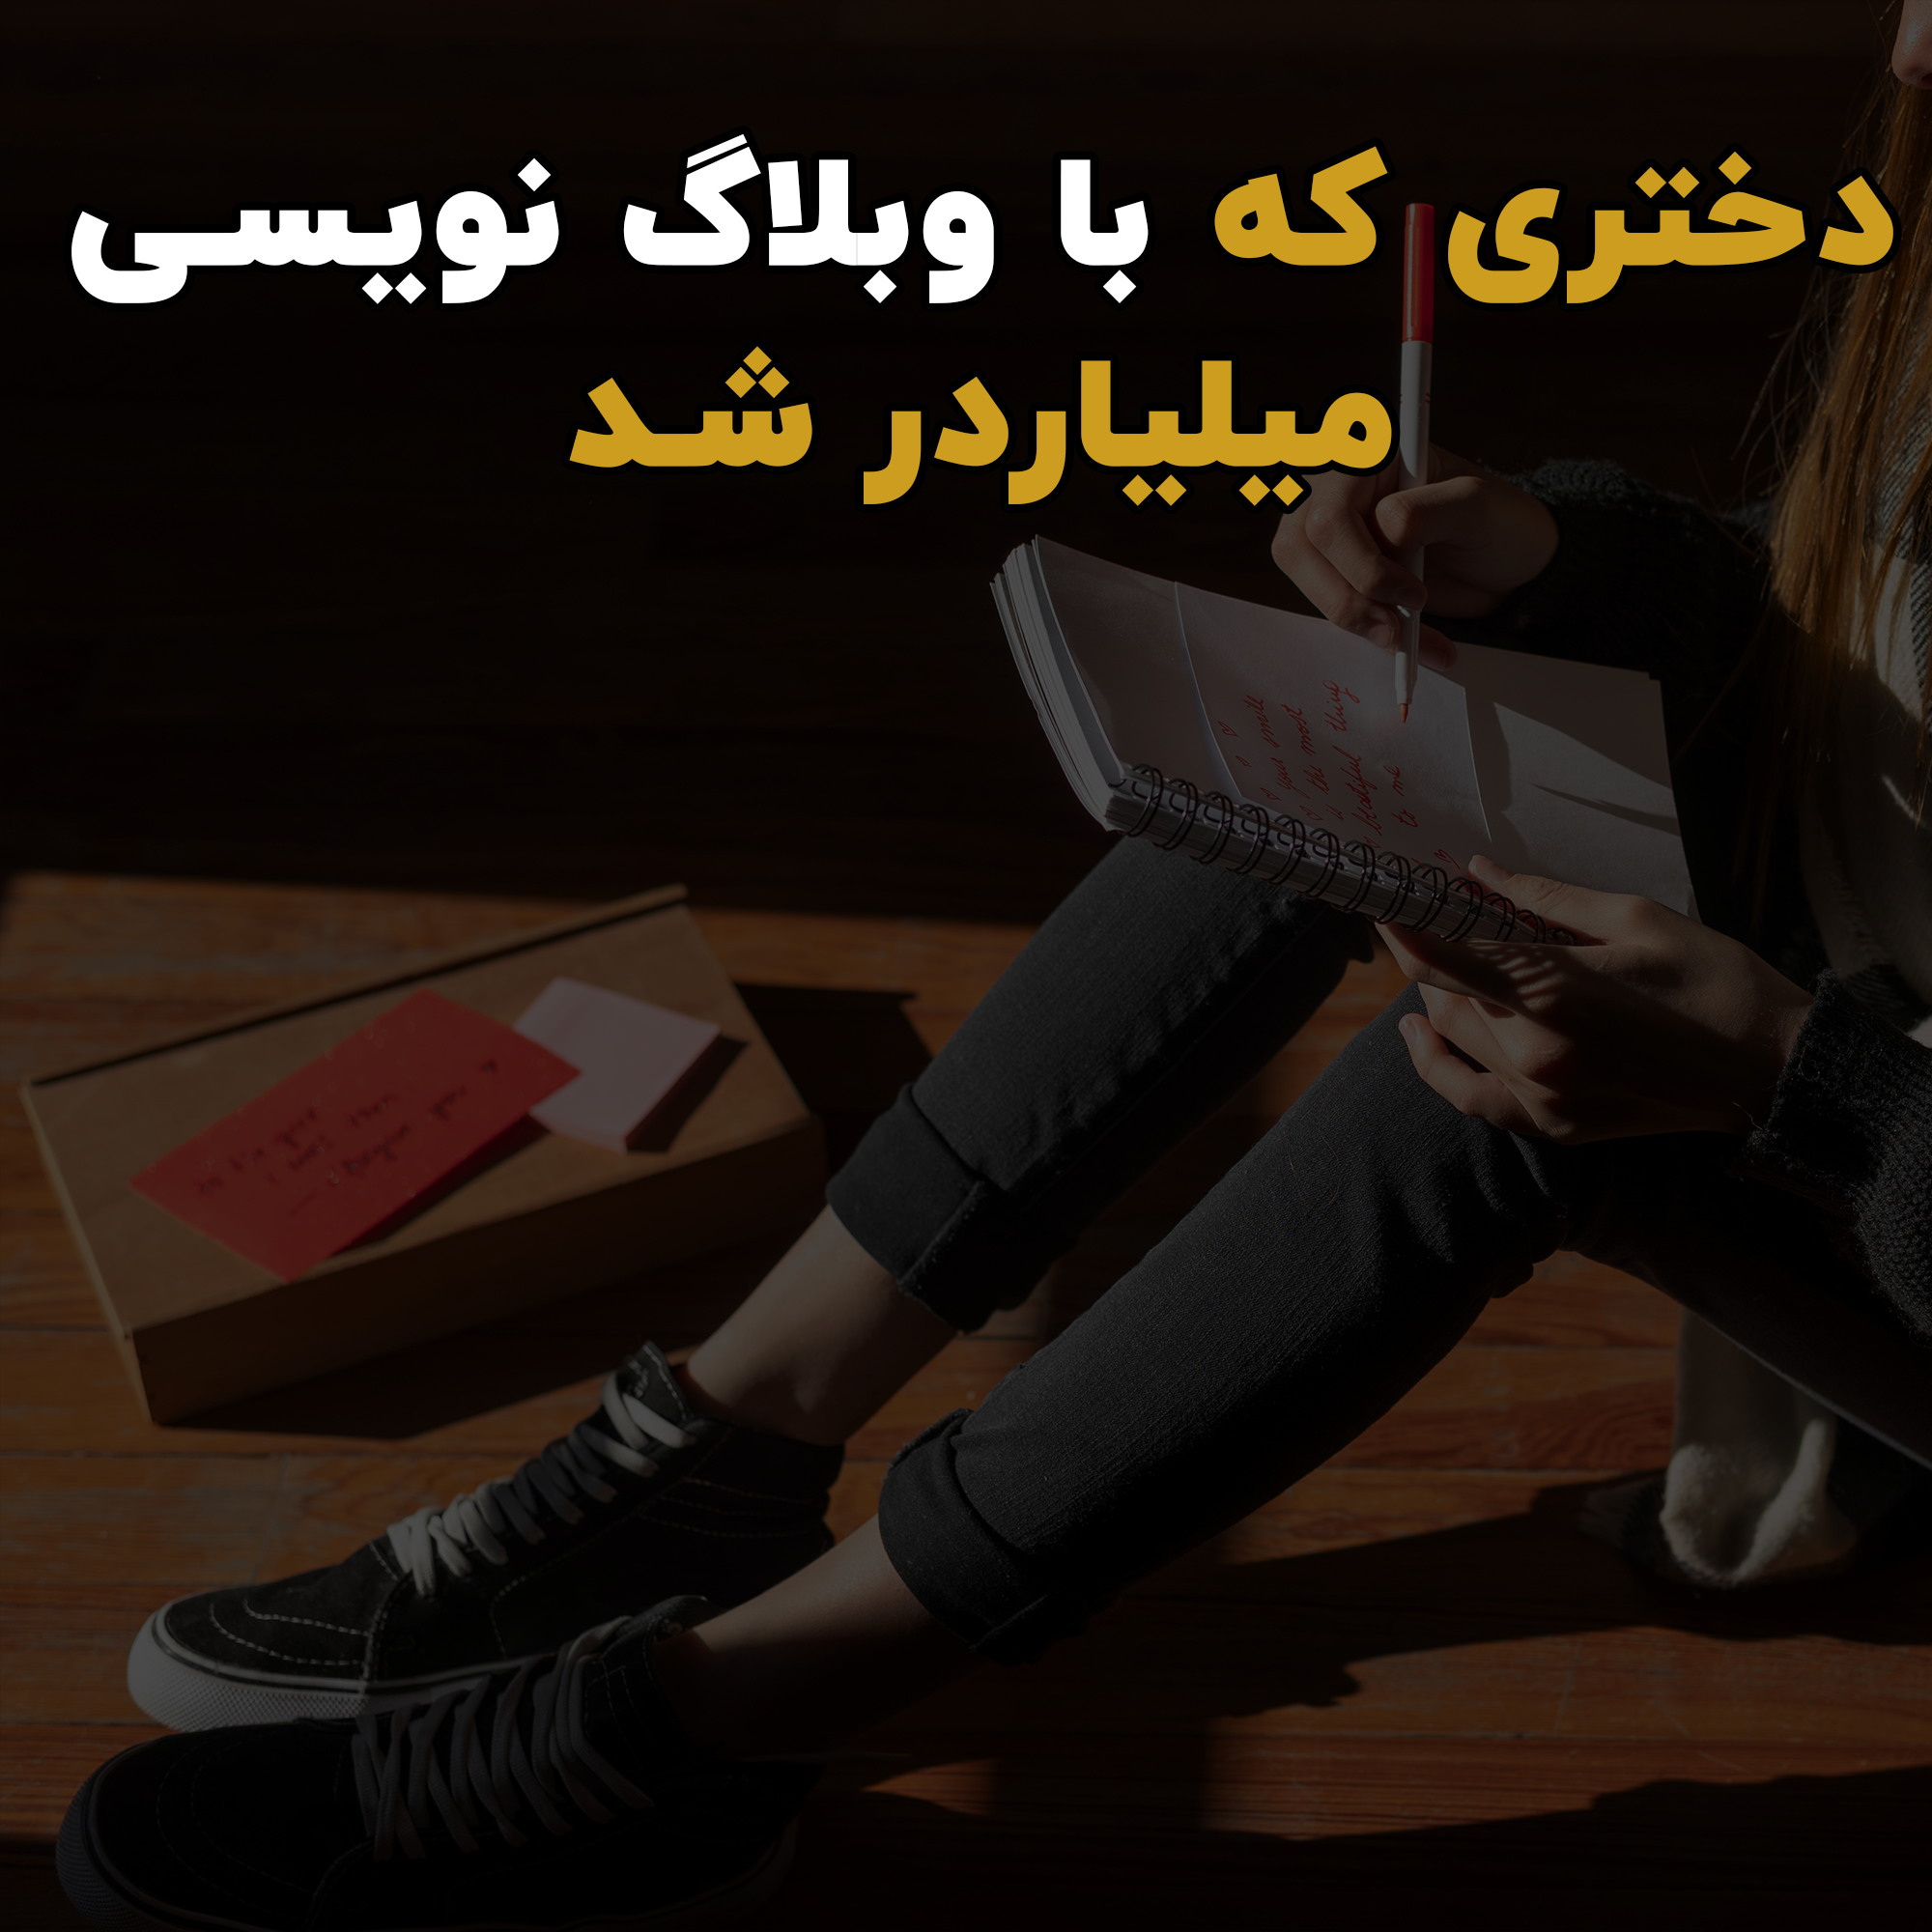 دختری که با وبلاگ نویسی میلیاردر شد